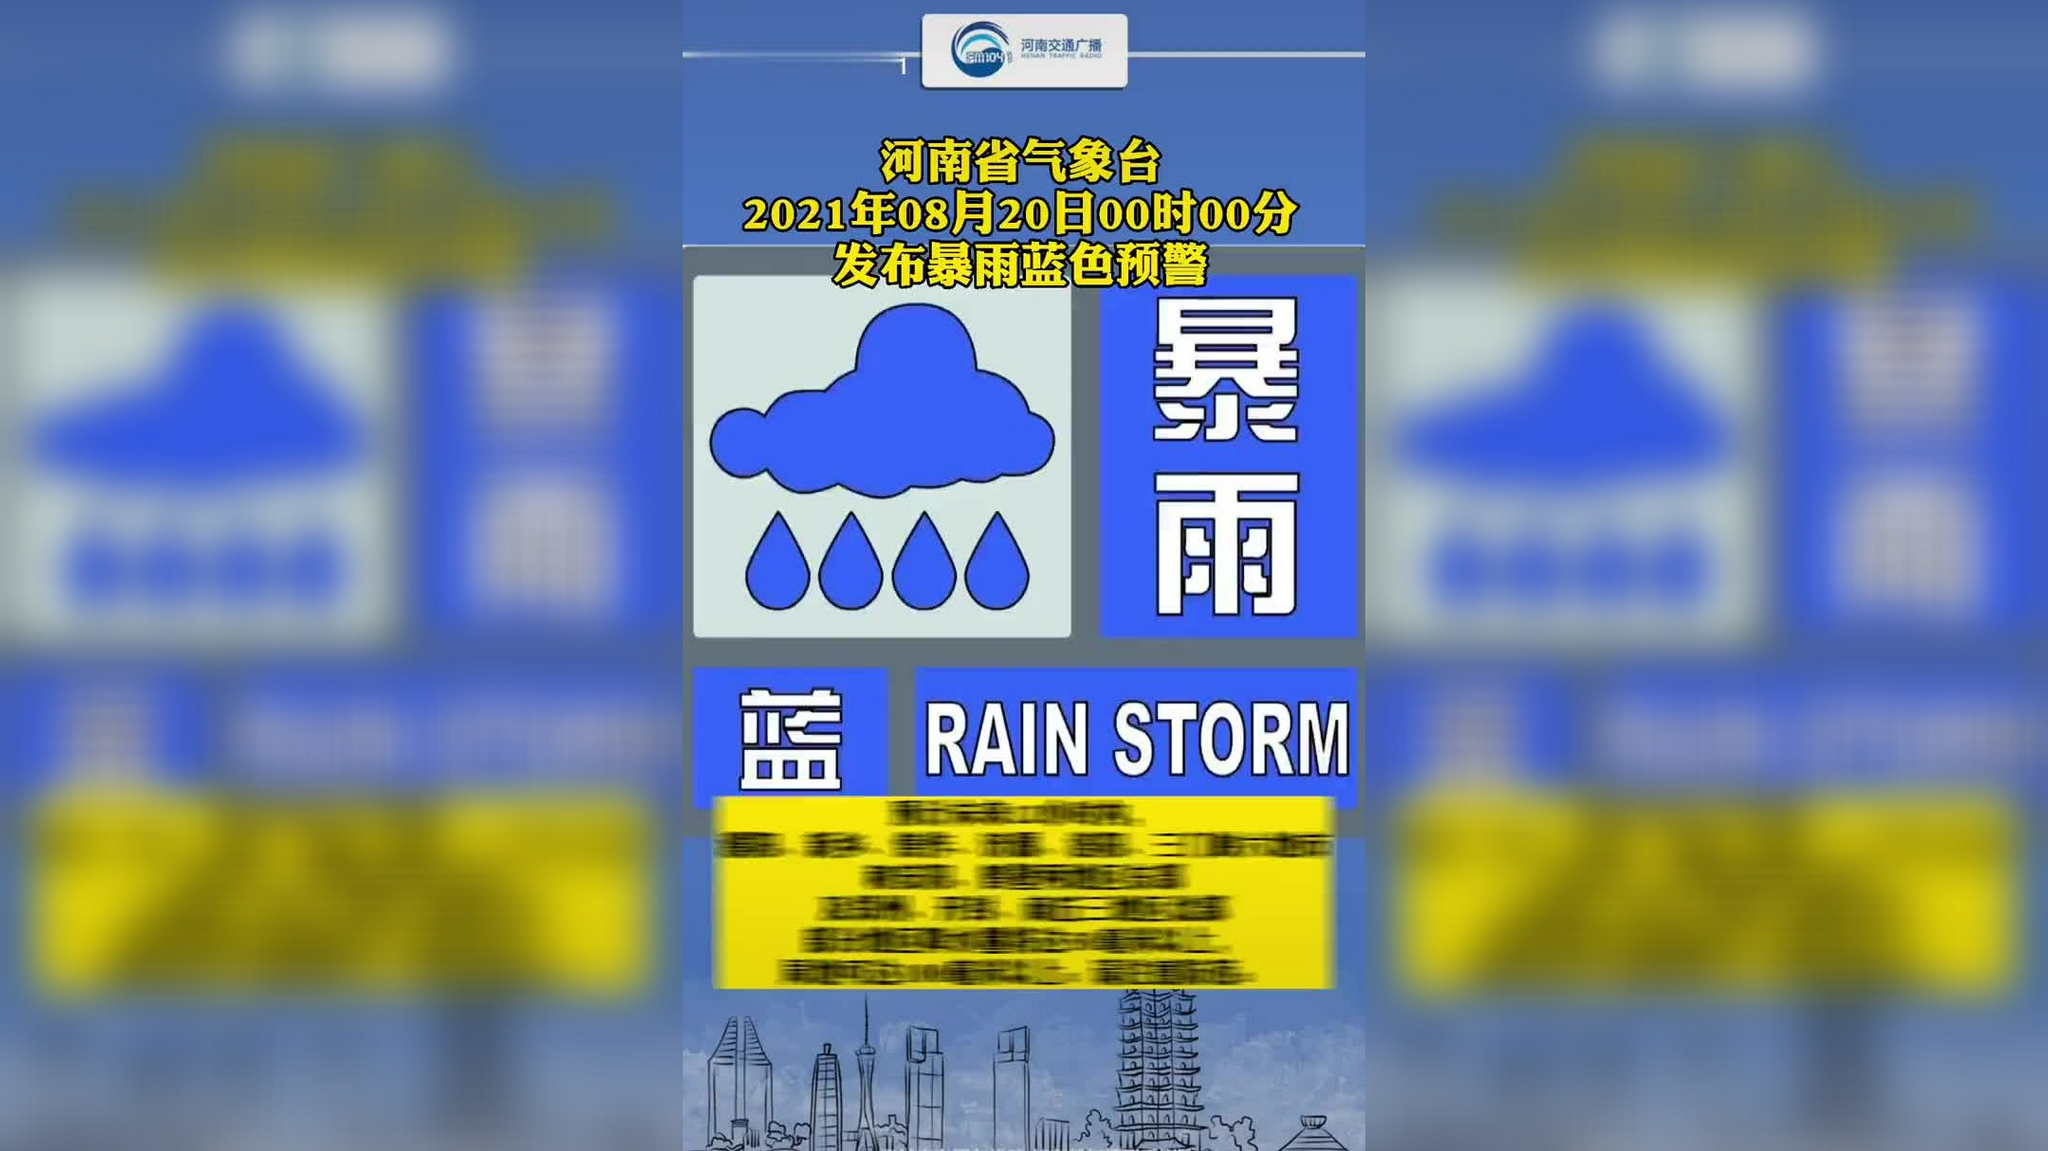 河南省气象台2021年08月20日00时00分发布暴雨蓝色预警